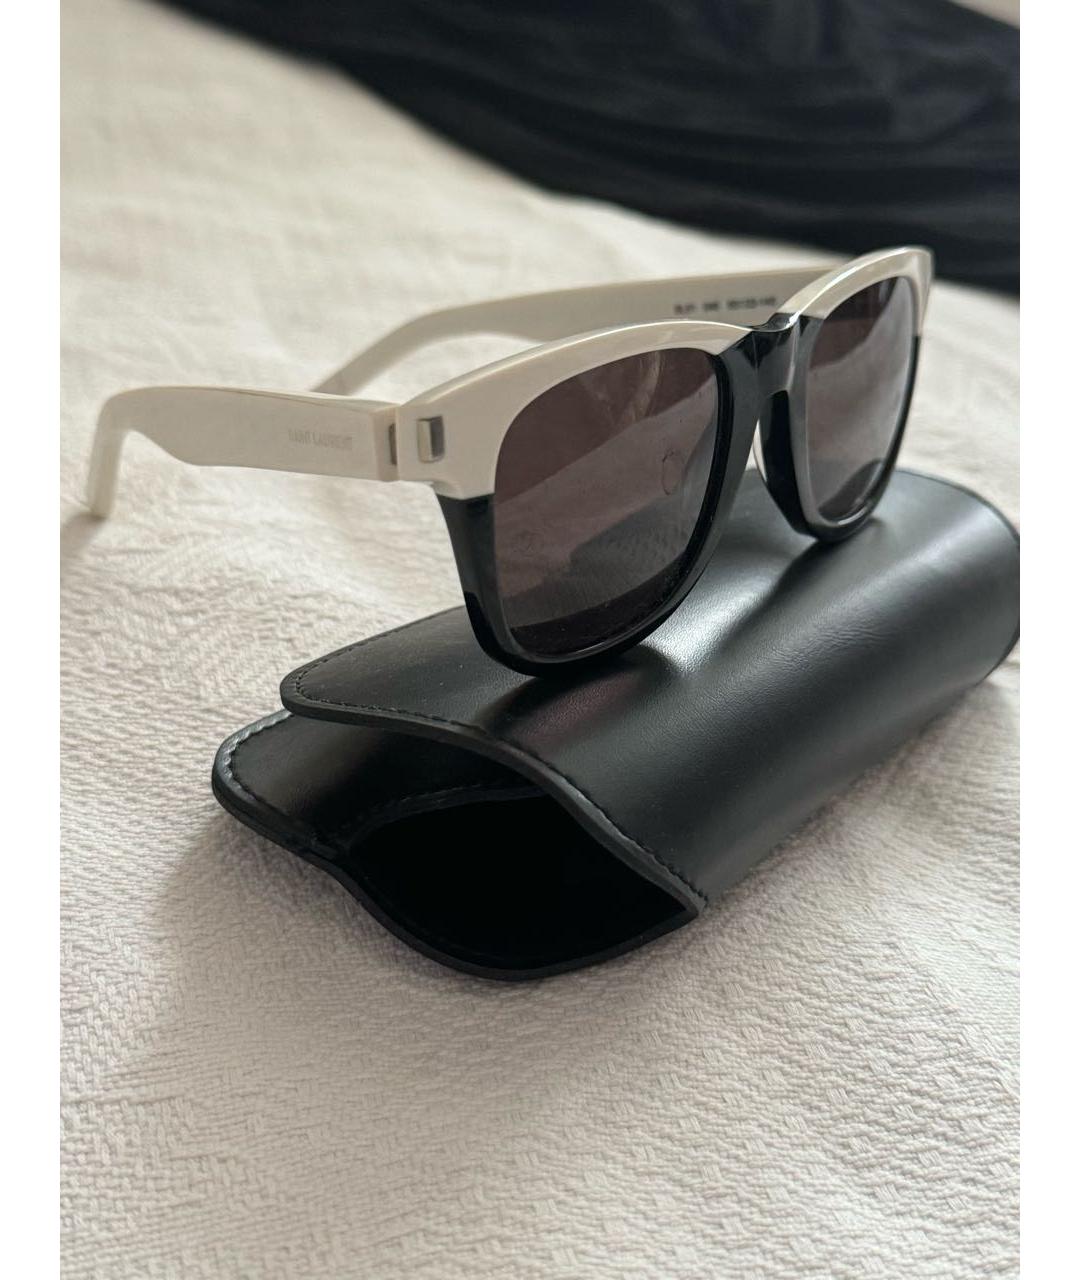 SAINT LAURENT Черные пластиковые солнцезащитные очки, фото 8